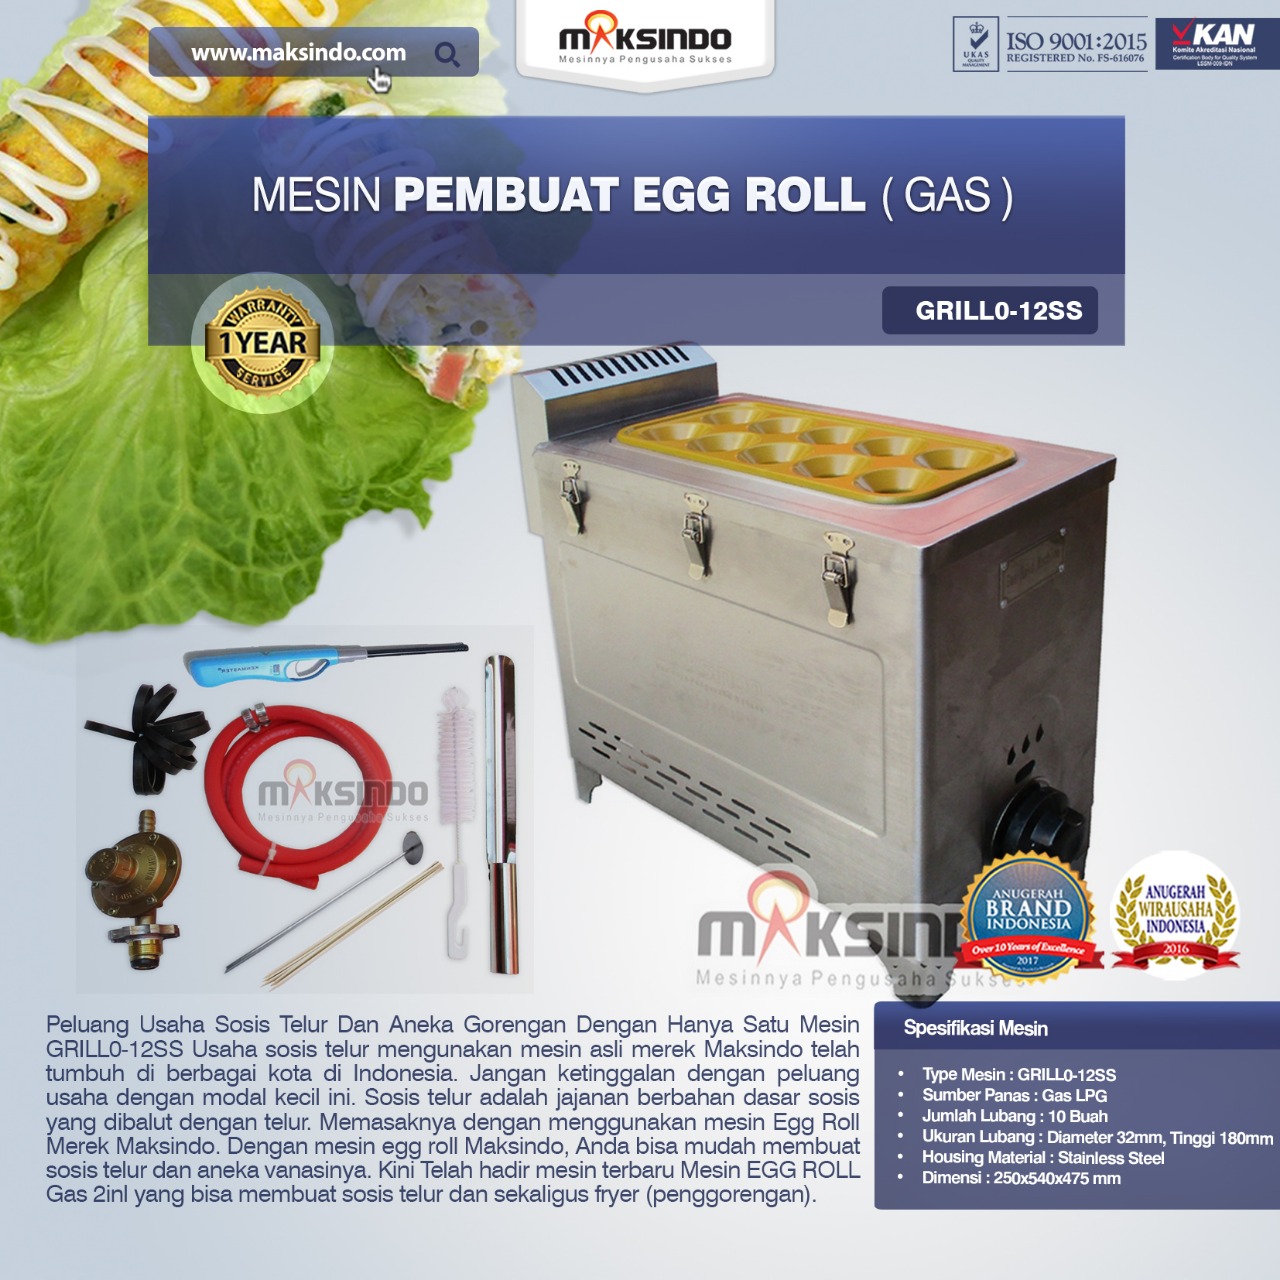 Jual Mesin Pembuat Egg Roll (Gas) GRILLO-12SS di Blitar